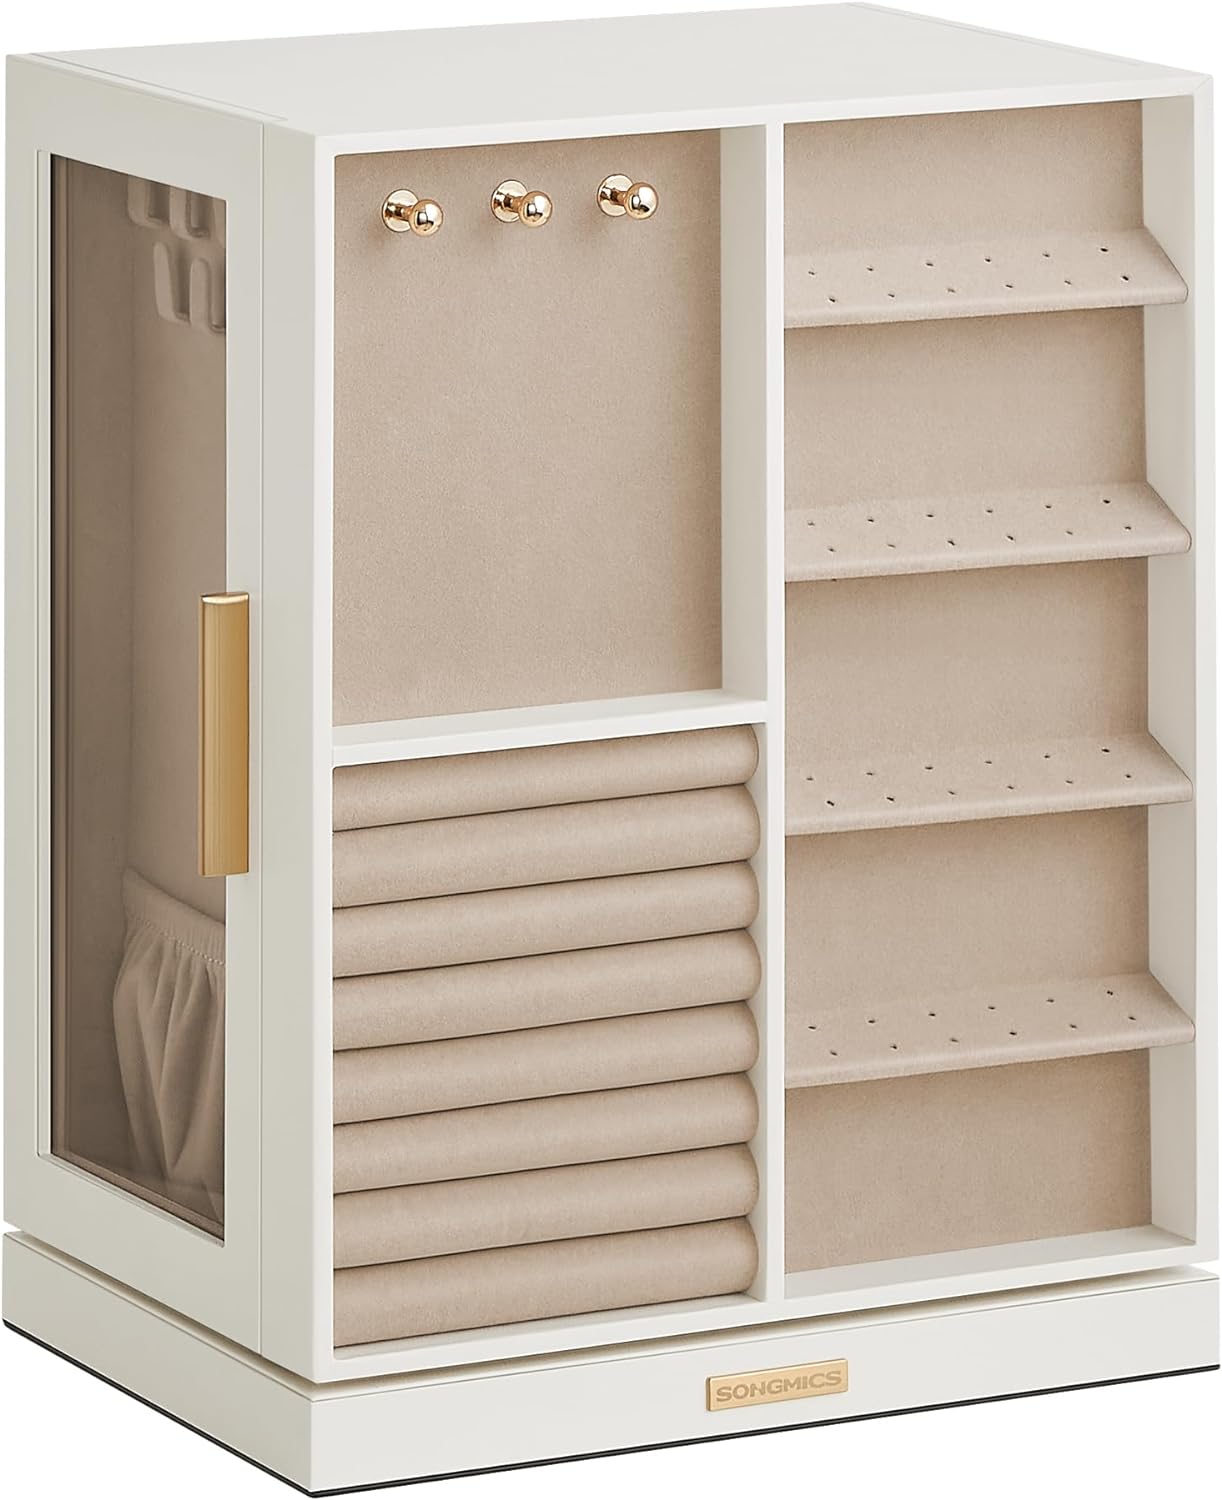 Jewelry Organizer Storage Case with 5 Drawers, 360 Rotating Organizer, Jewelry Storage, Open Design, Cloud White